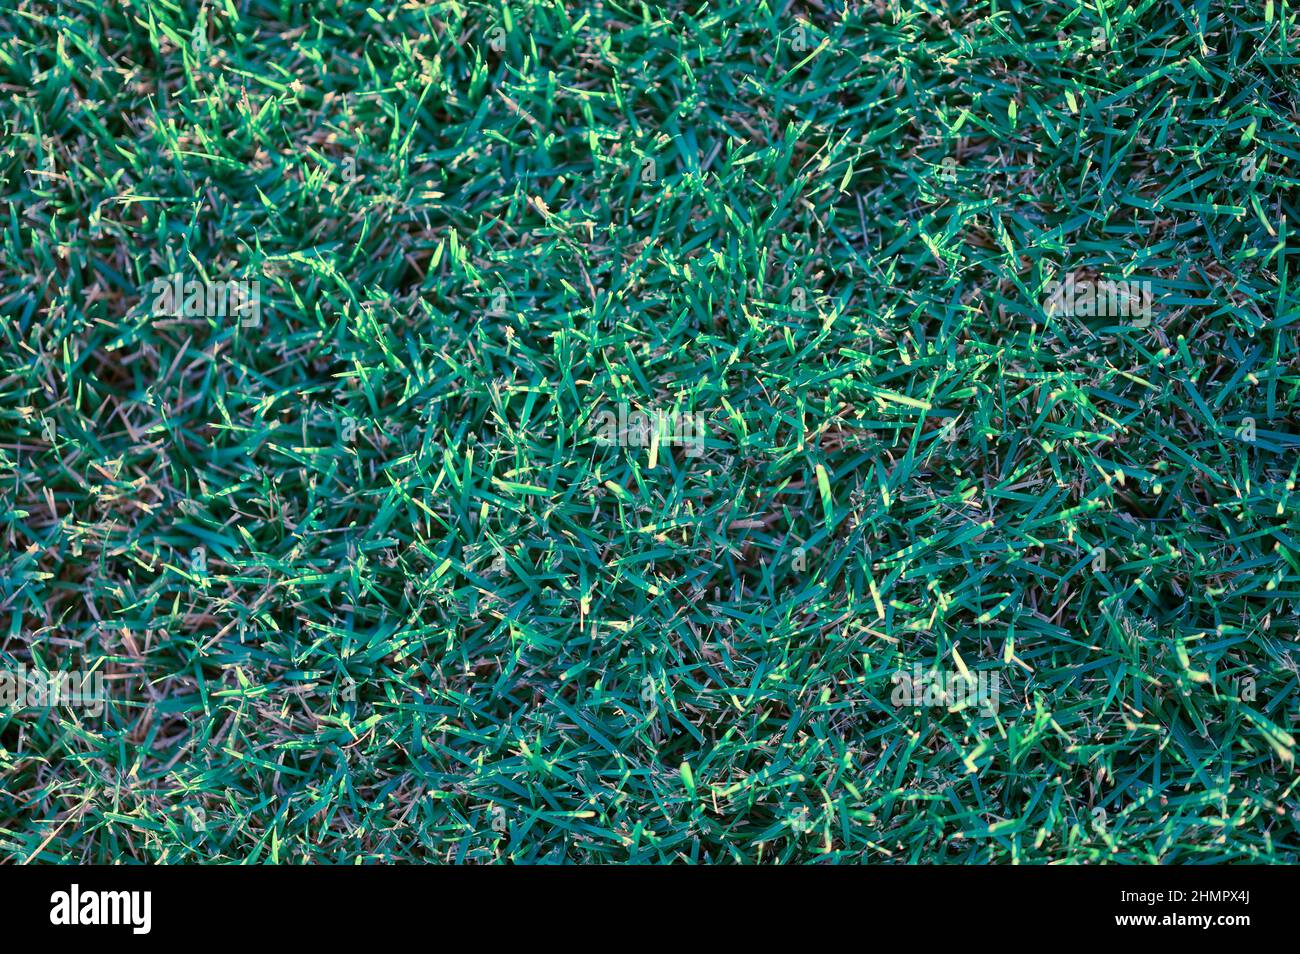 La foto mostra un prato verde erba modello. Ogni lama di erba è chiaramente visibile. La foto del motivo erba è stata fatta nella più alta qualità HD Foto Stock